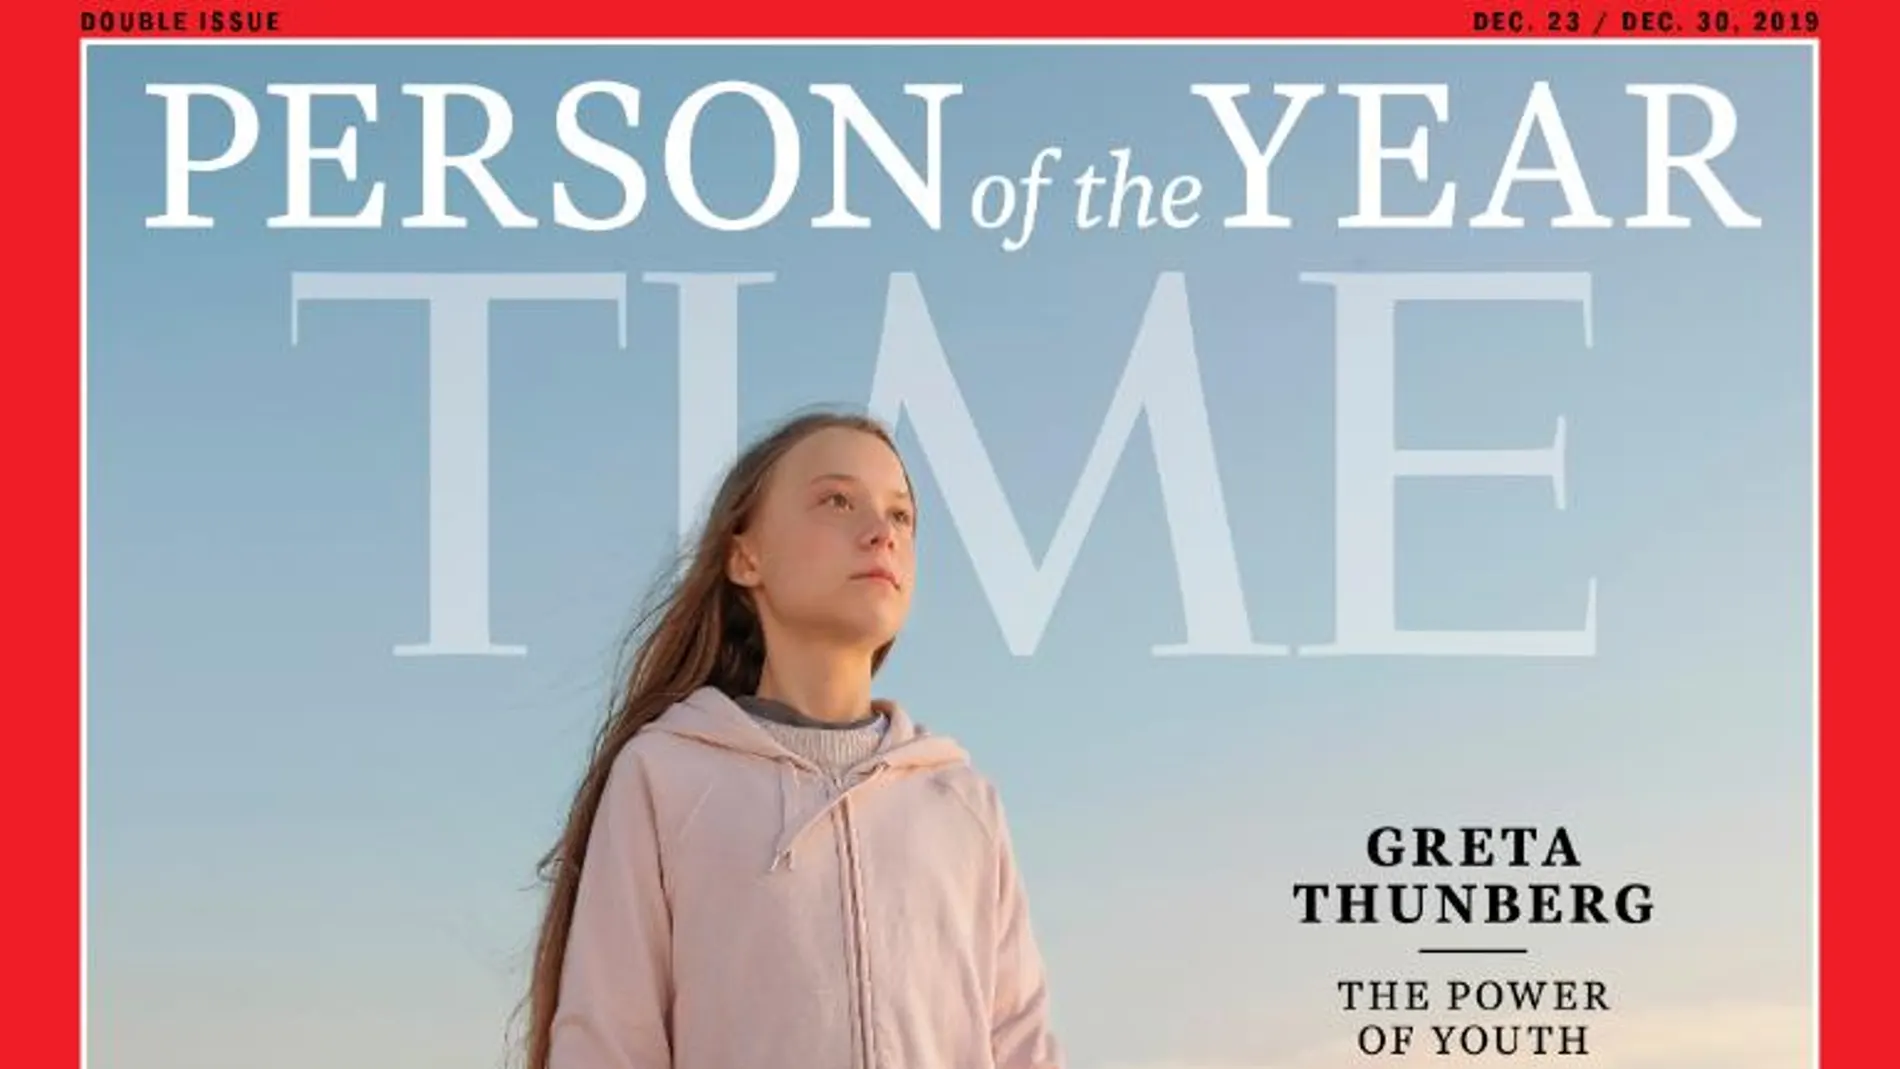 Portada de la revista Time en la que reconoce a Greta Thunberg como persona del año